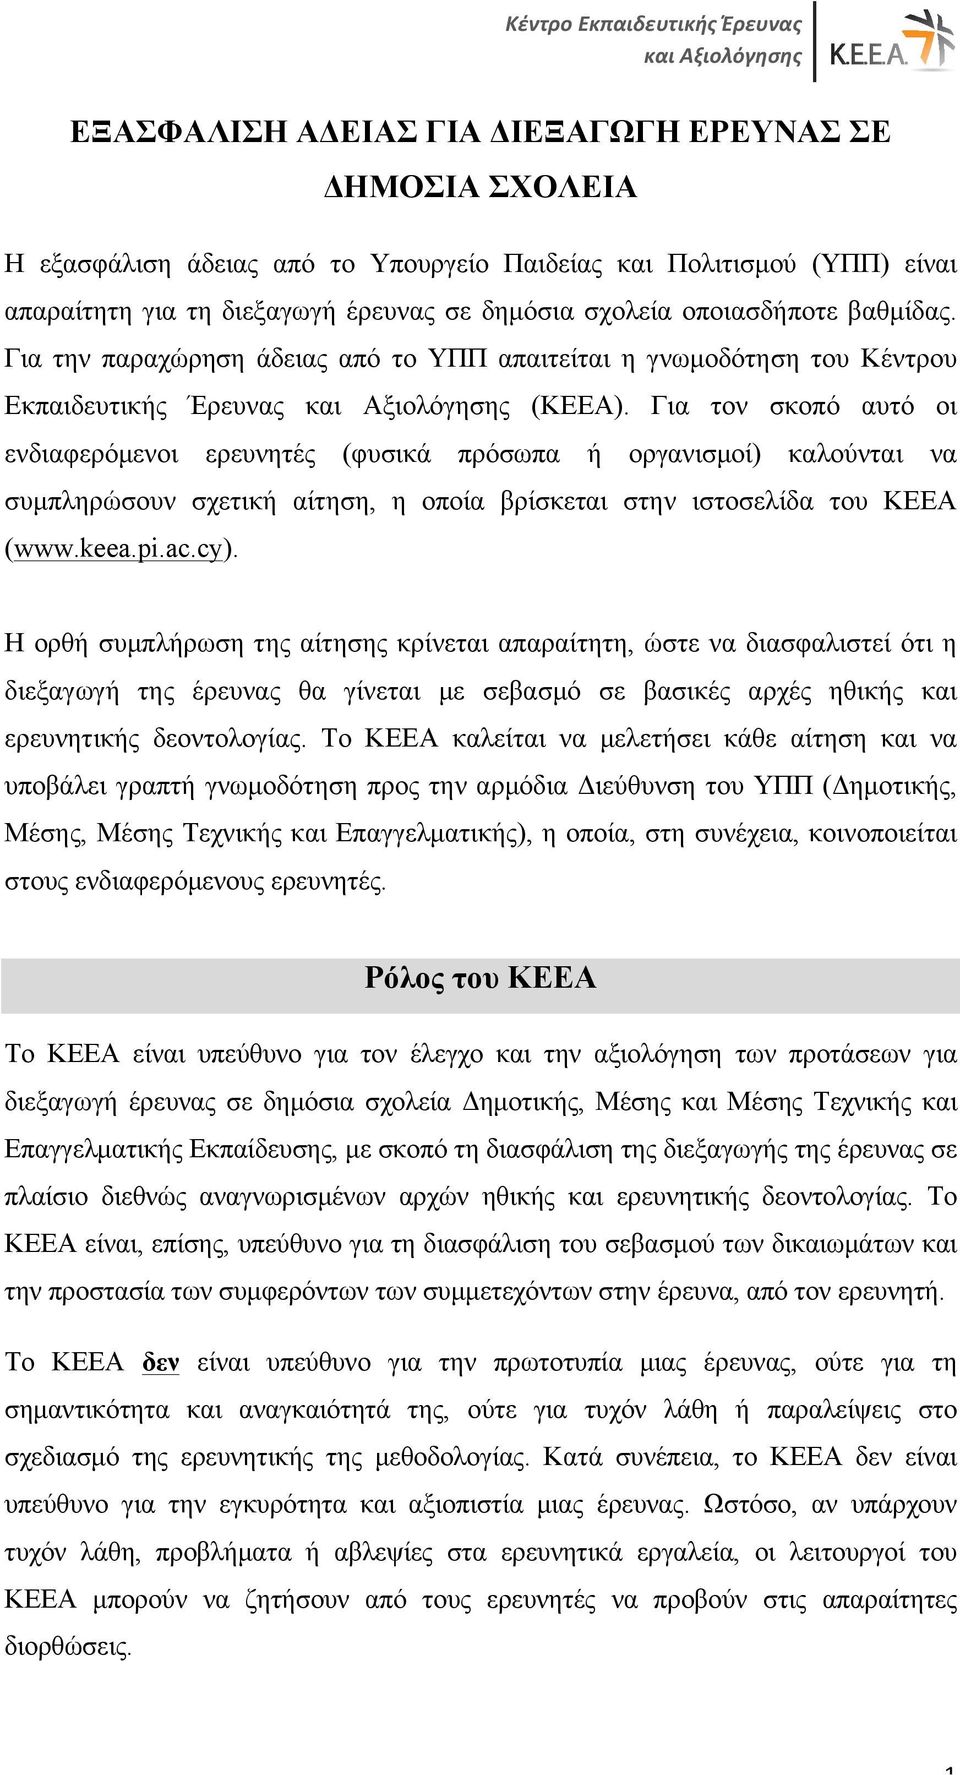 Για τον σκοπό αυτό οι ενδιαφερόµενοι ερευνητές (φυσικά πρόσωπα ή οργανισµοί) καλούνται να συµπληρώσουν σχετική αίτηση, η οποία βρίσκεται στην ιστοσελίδα του ΚΕΕΑ (www.keea.pi.ac.cy).